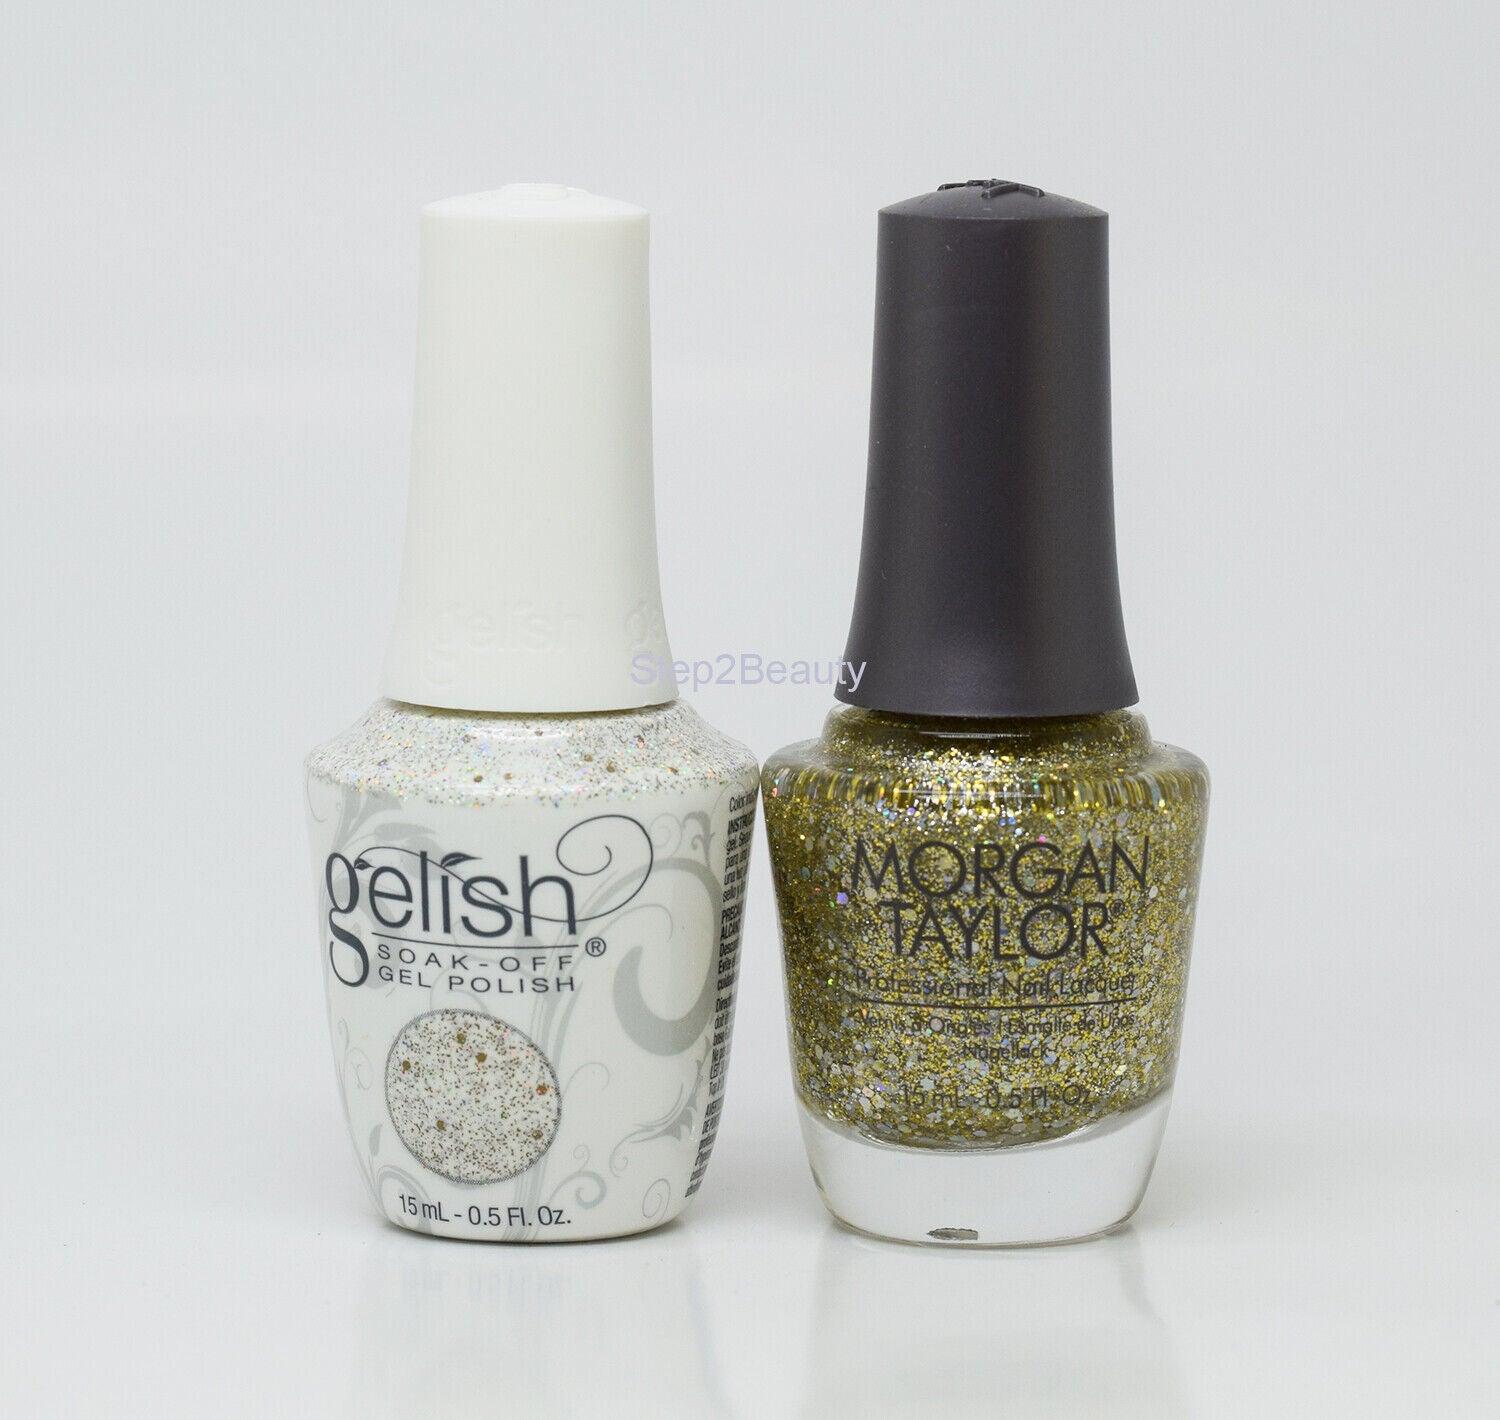 Gelish DUO Soak Off Gel Polish + Morgan Taylor Nail Lacquer - #851 Grand Jewels